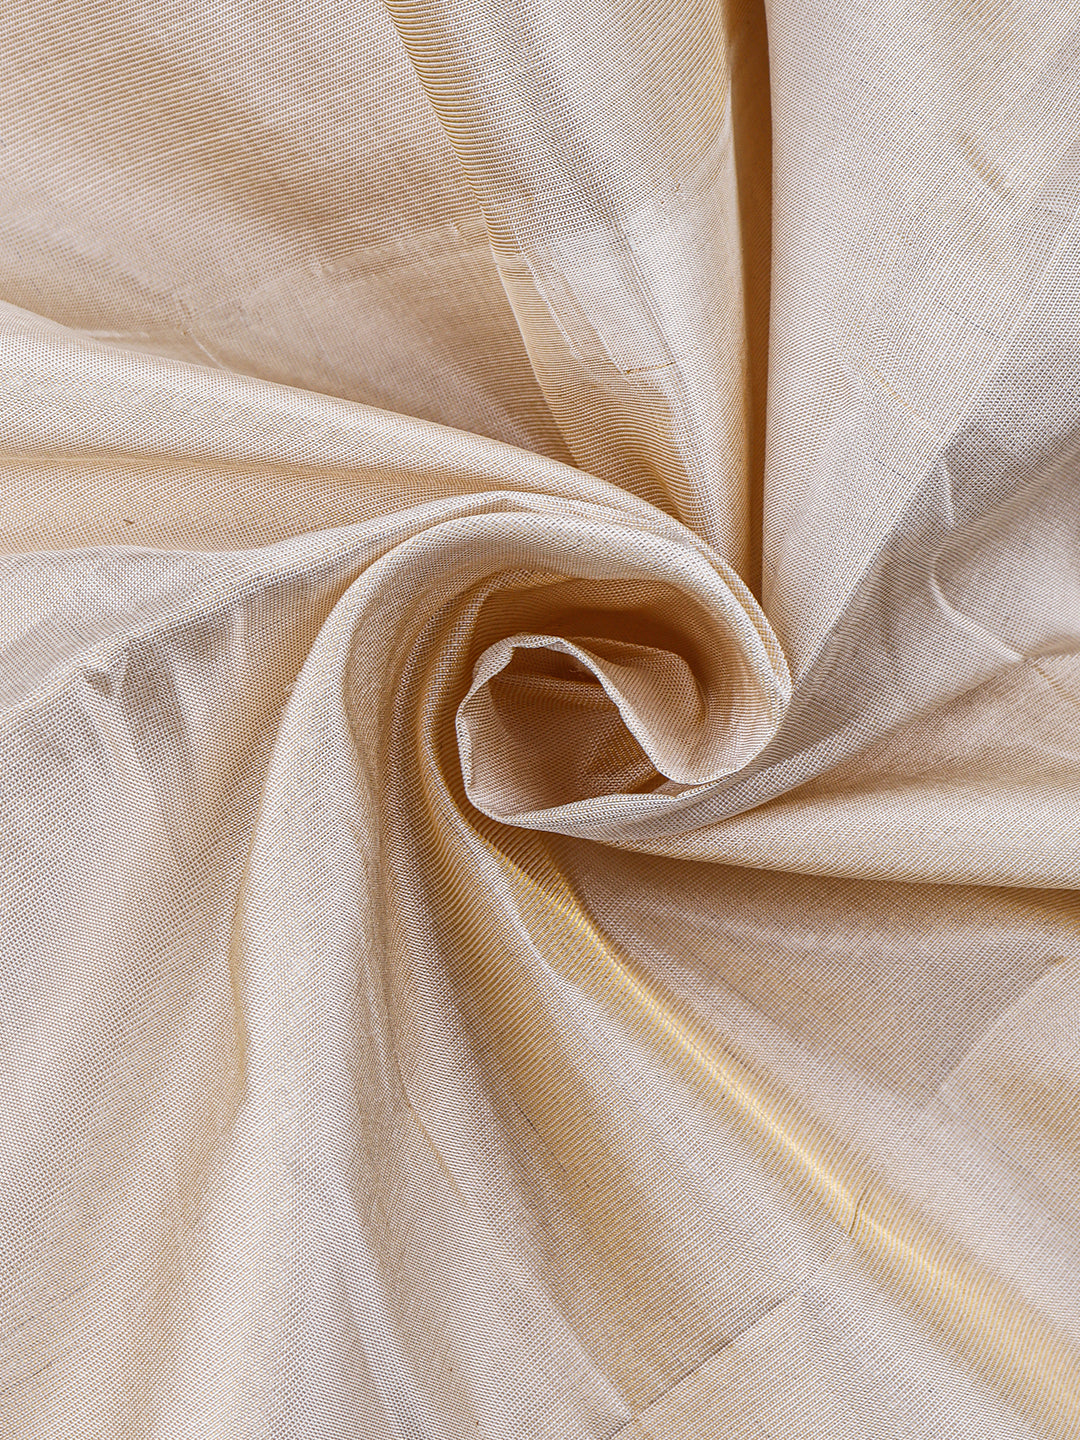 Premium Pure Silk Plain Golden Tissue Shirt Bit, 2" Dhoti & Angavasthram Set Rajahamsa